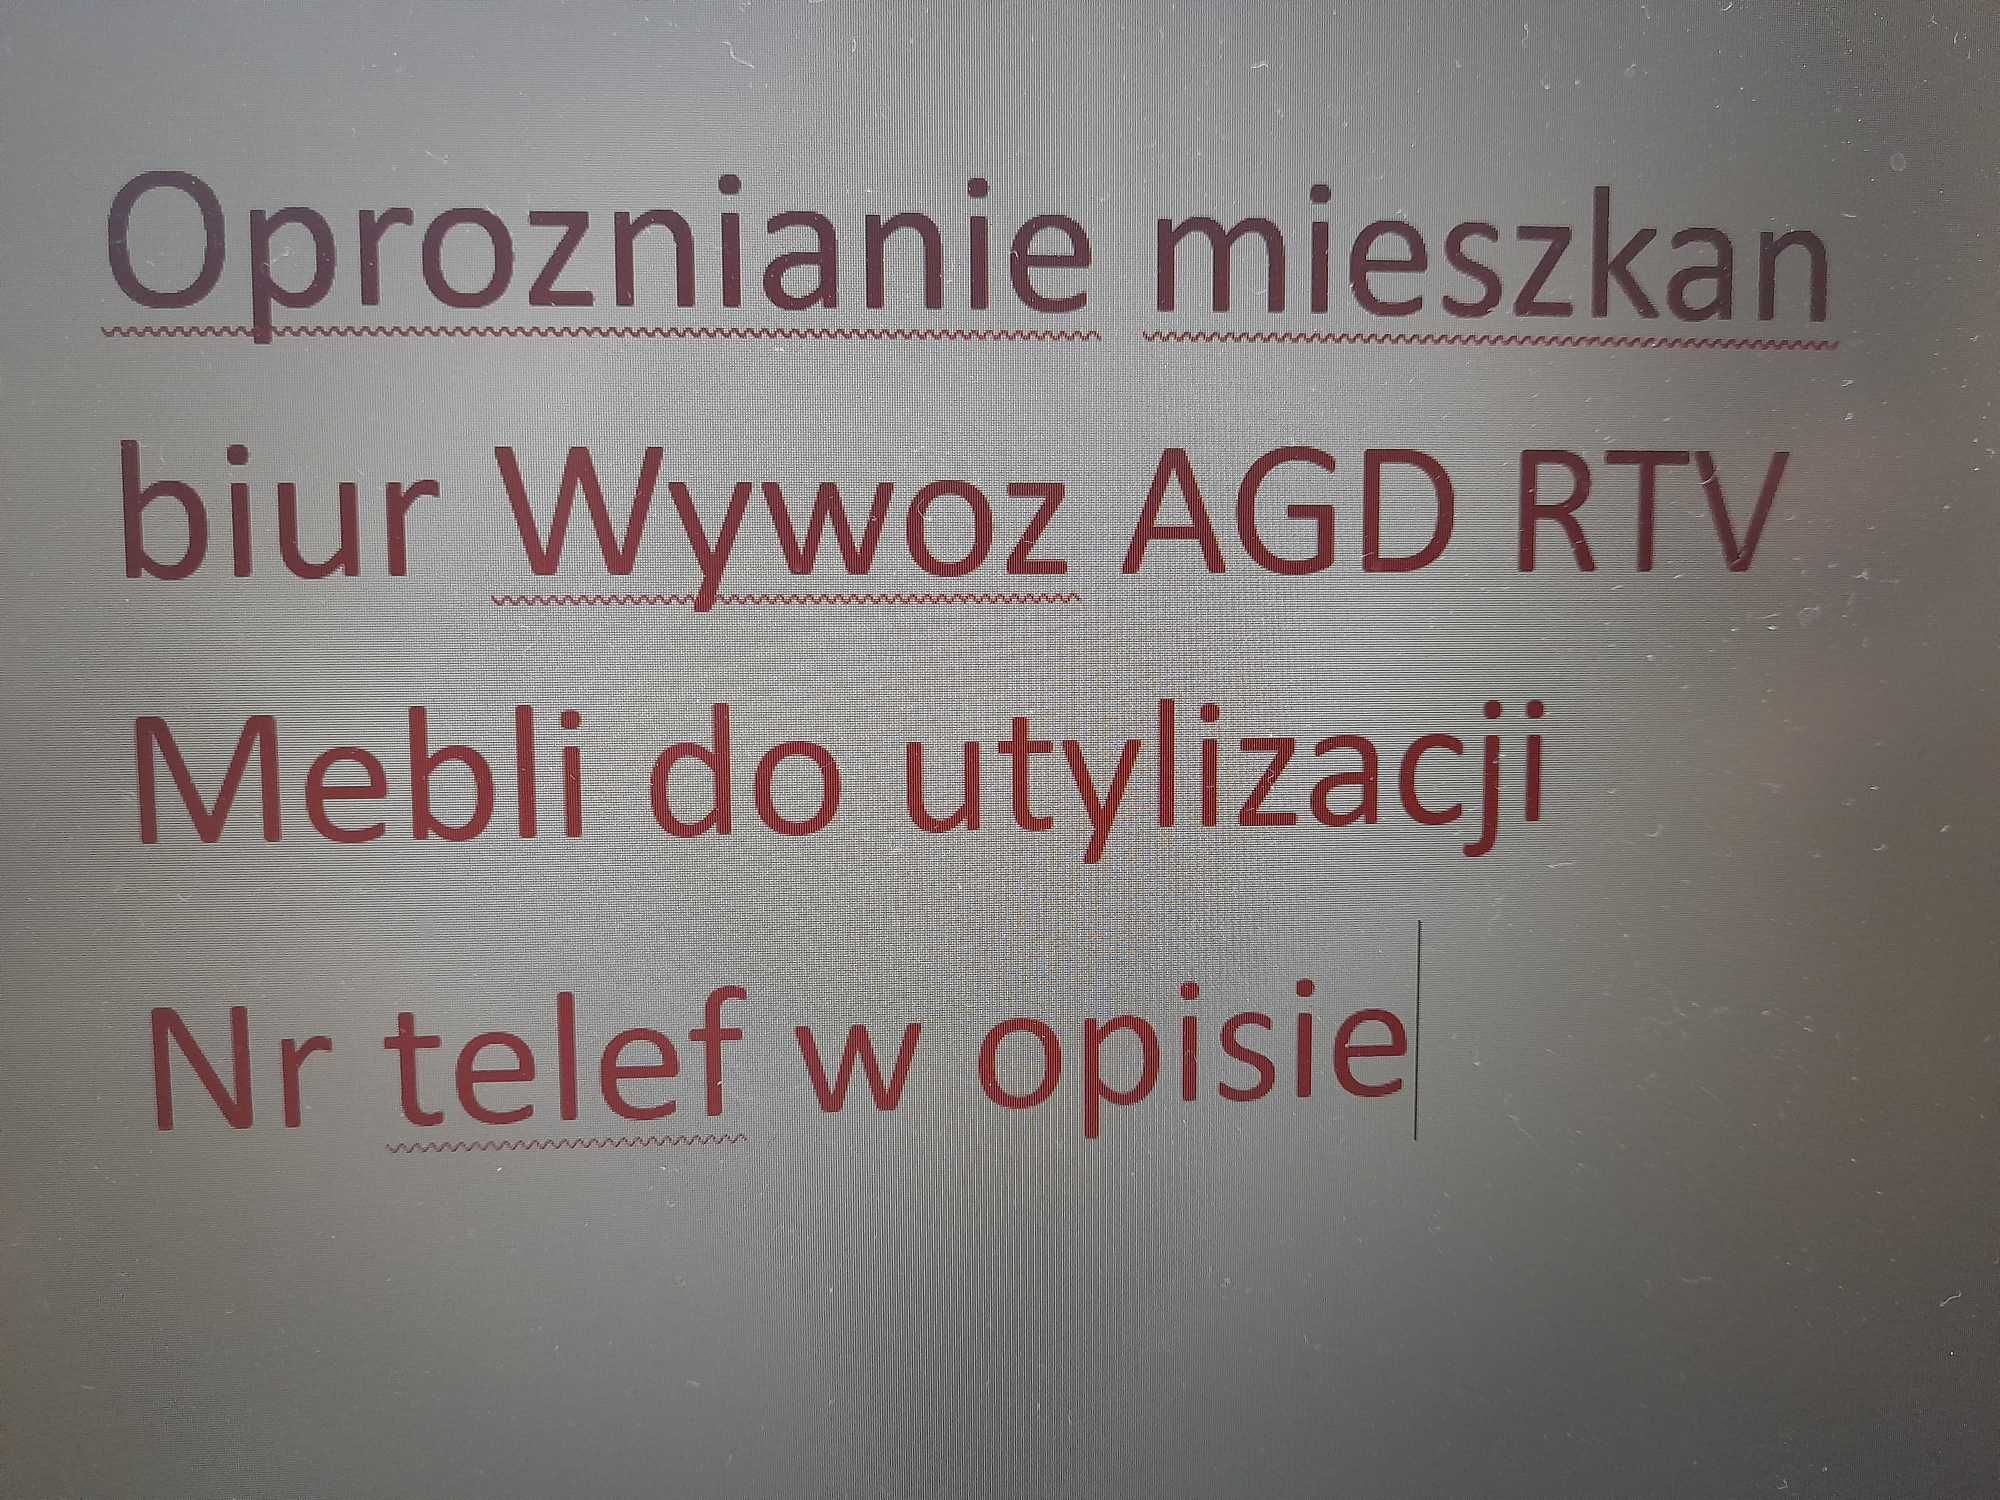 Oproznianie mieszkan biur  Wywoz AGD RTV Mebli Utylizacjia CHORZOW